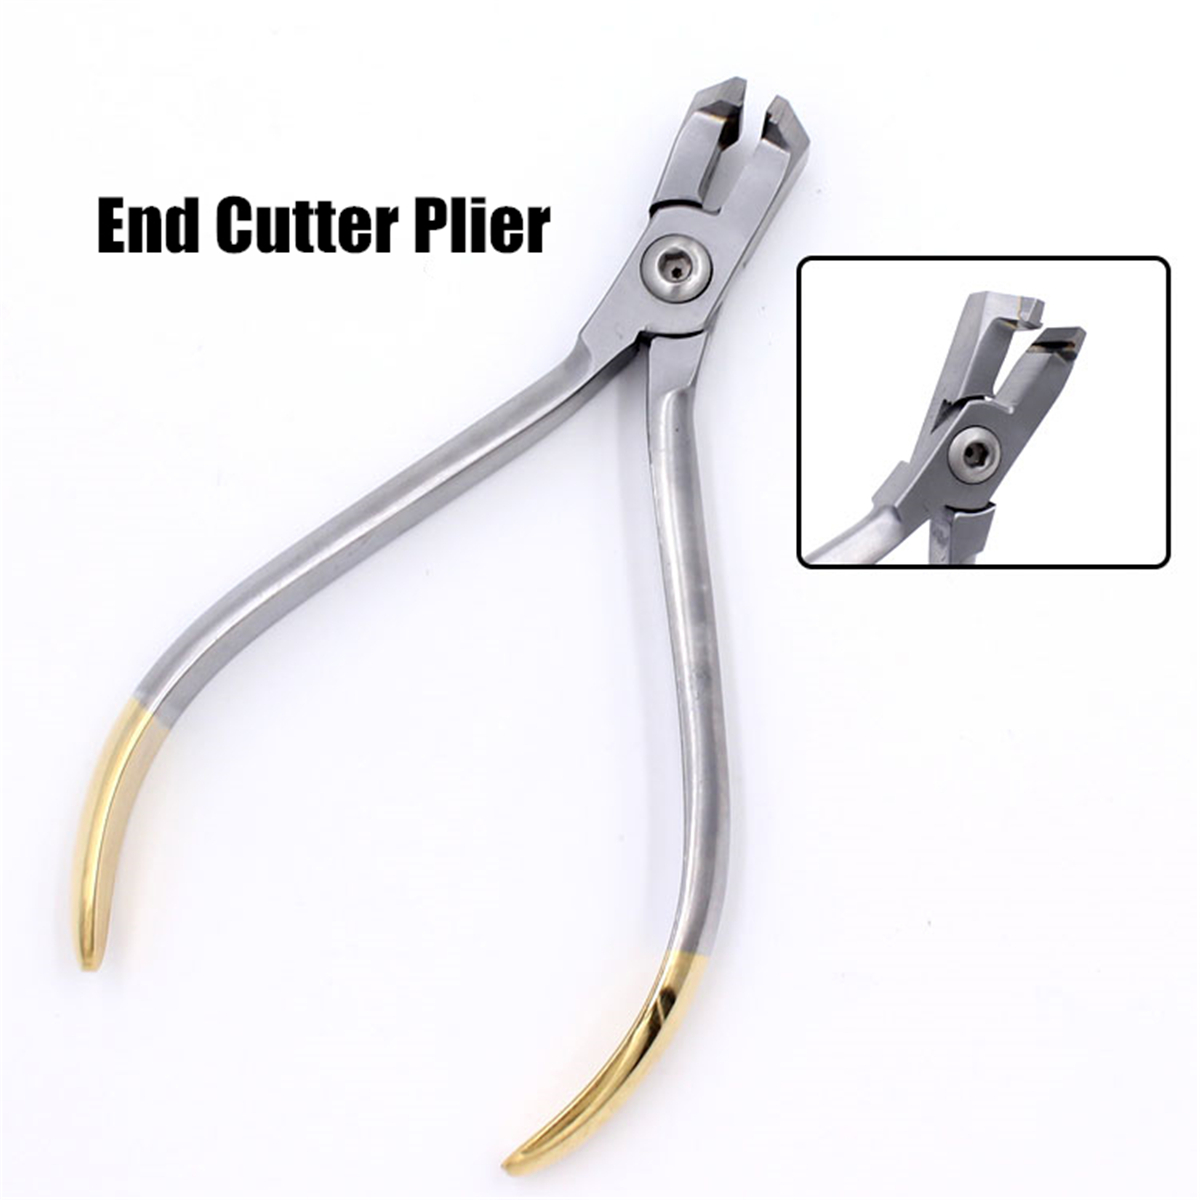 Dental-Orthodontic-Forceps-Pliers-Tool-Cutter-End-Distal-Wires-Bending-Plier-KIM-Teeth-1439156-4